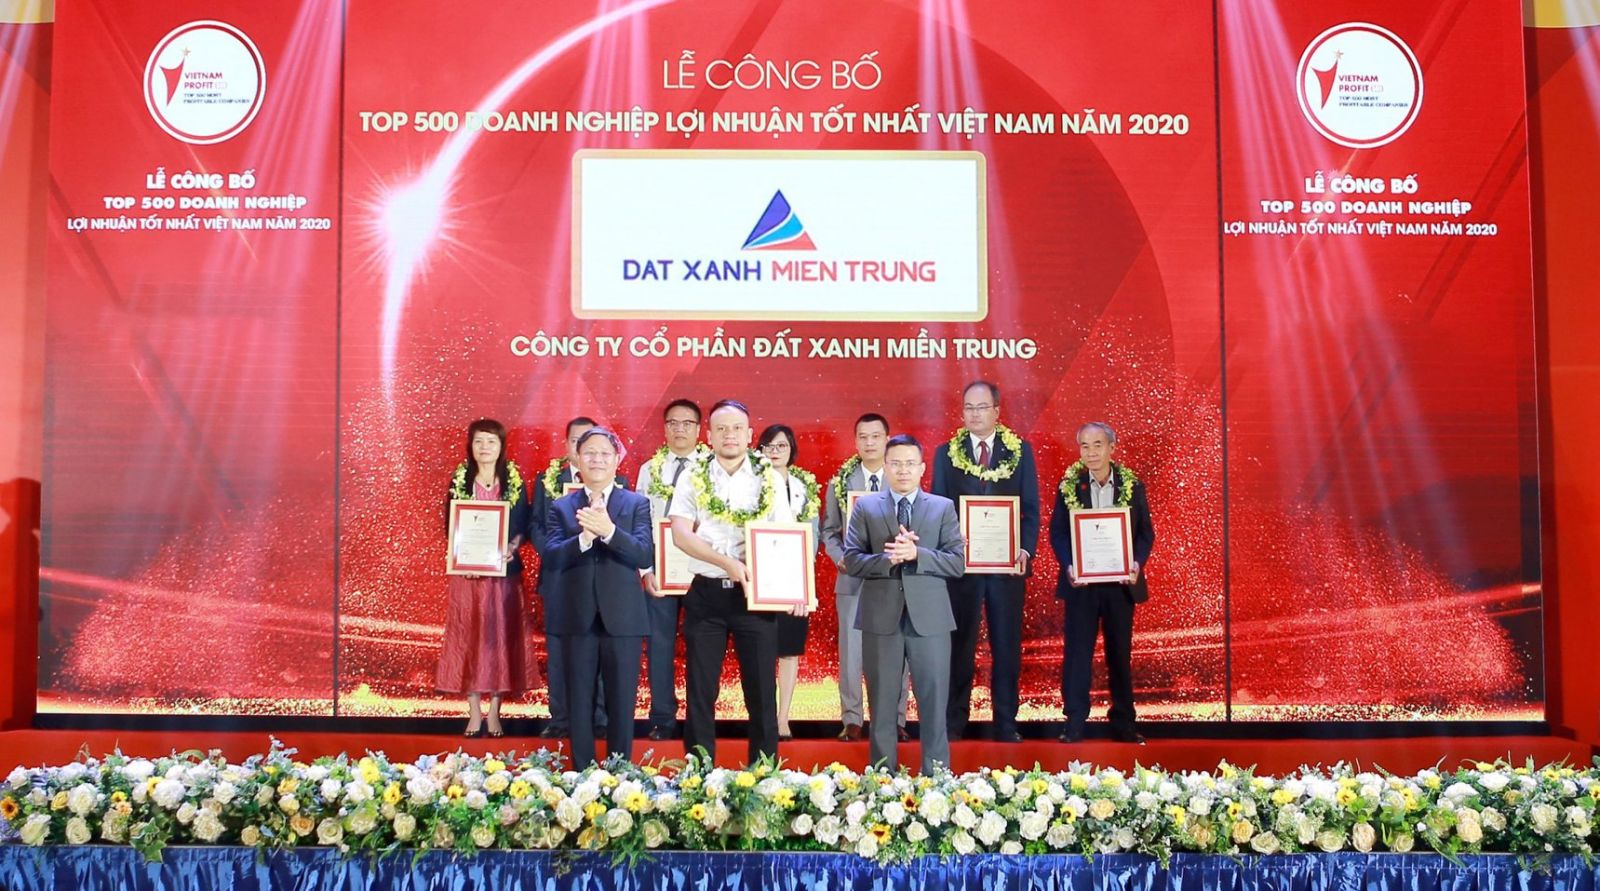 ĐẤT XANH MIỀN TRUNG LỌT TOP 500 DOANH NGHIỆP TƯ NHÂN CÓ LỢI NHUẬN TỐT NHẤT VIỆT NAM - Viet Nam Smart City